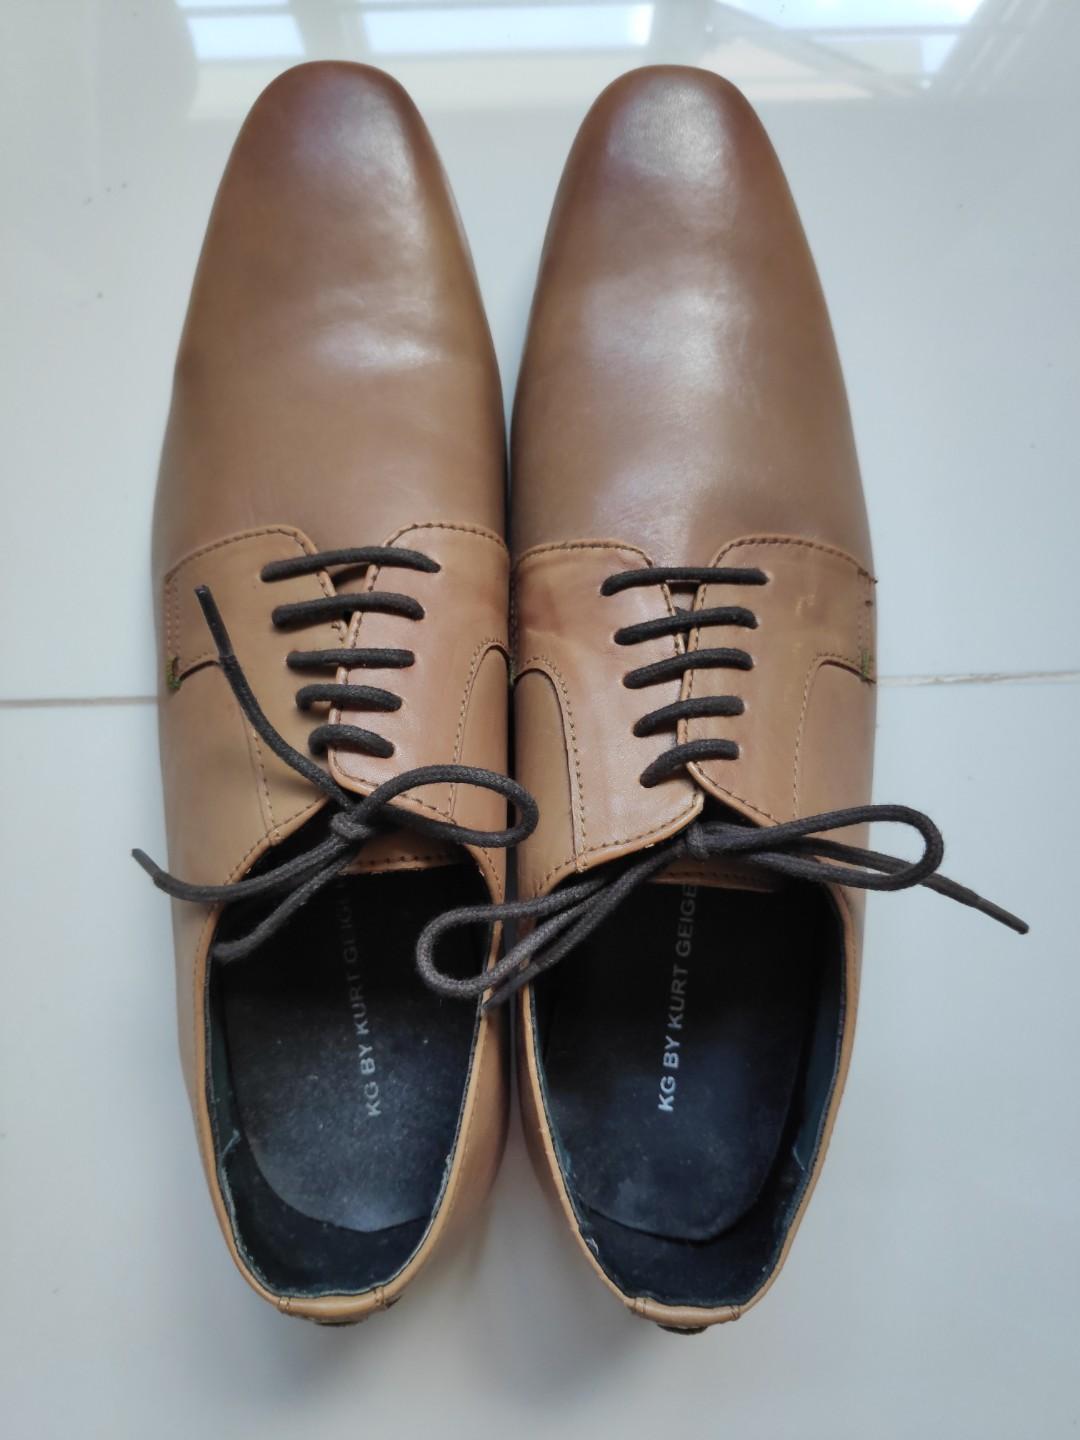 kg formal shoes